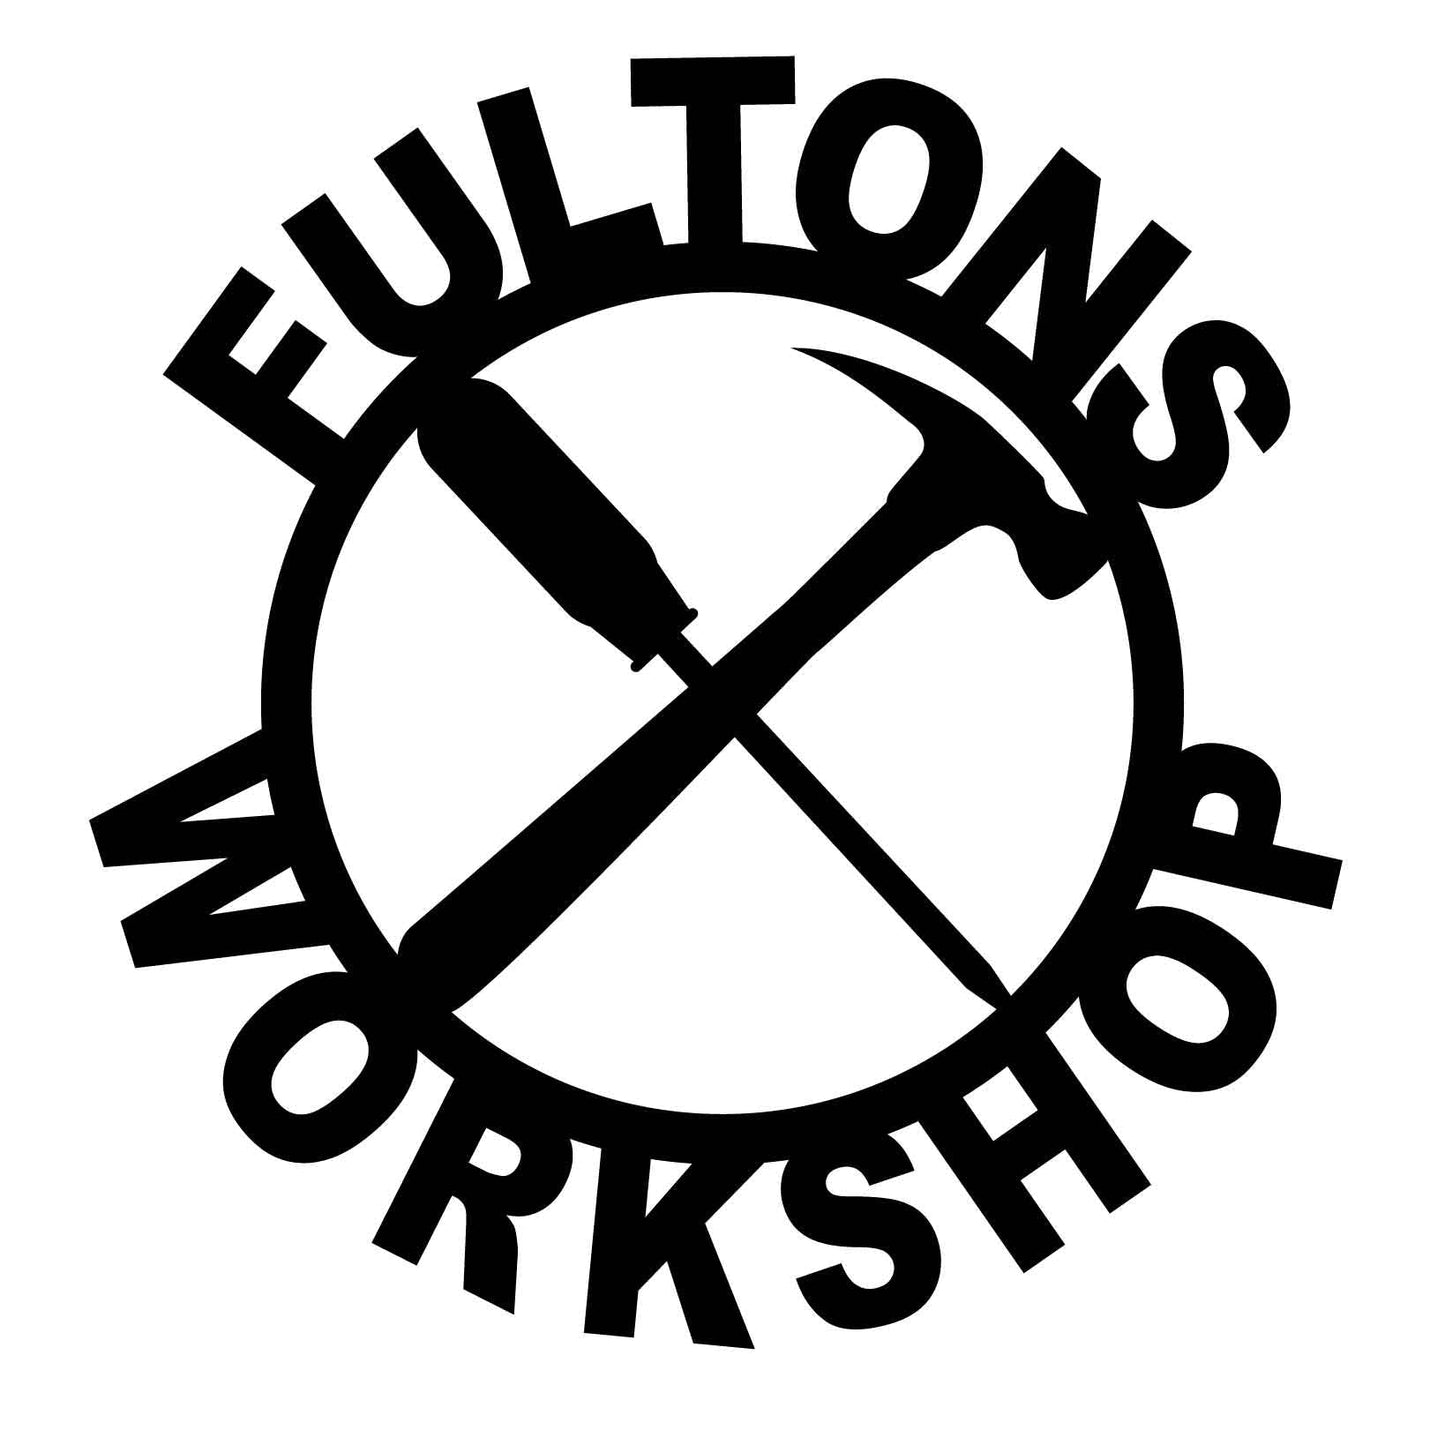 FULTONTS WORKSHOP-dxf file cut ready for cnc machine-dxfforcnc.com